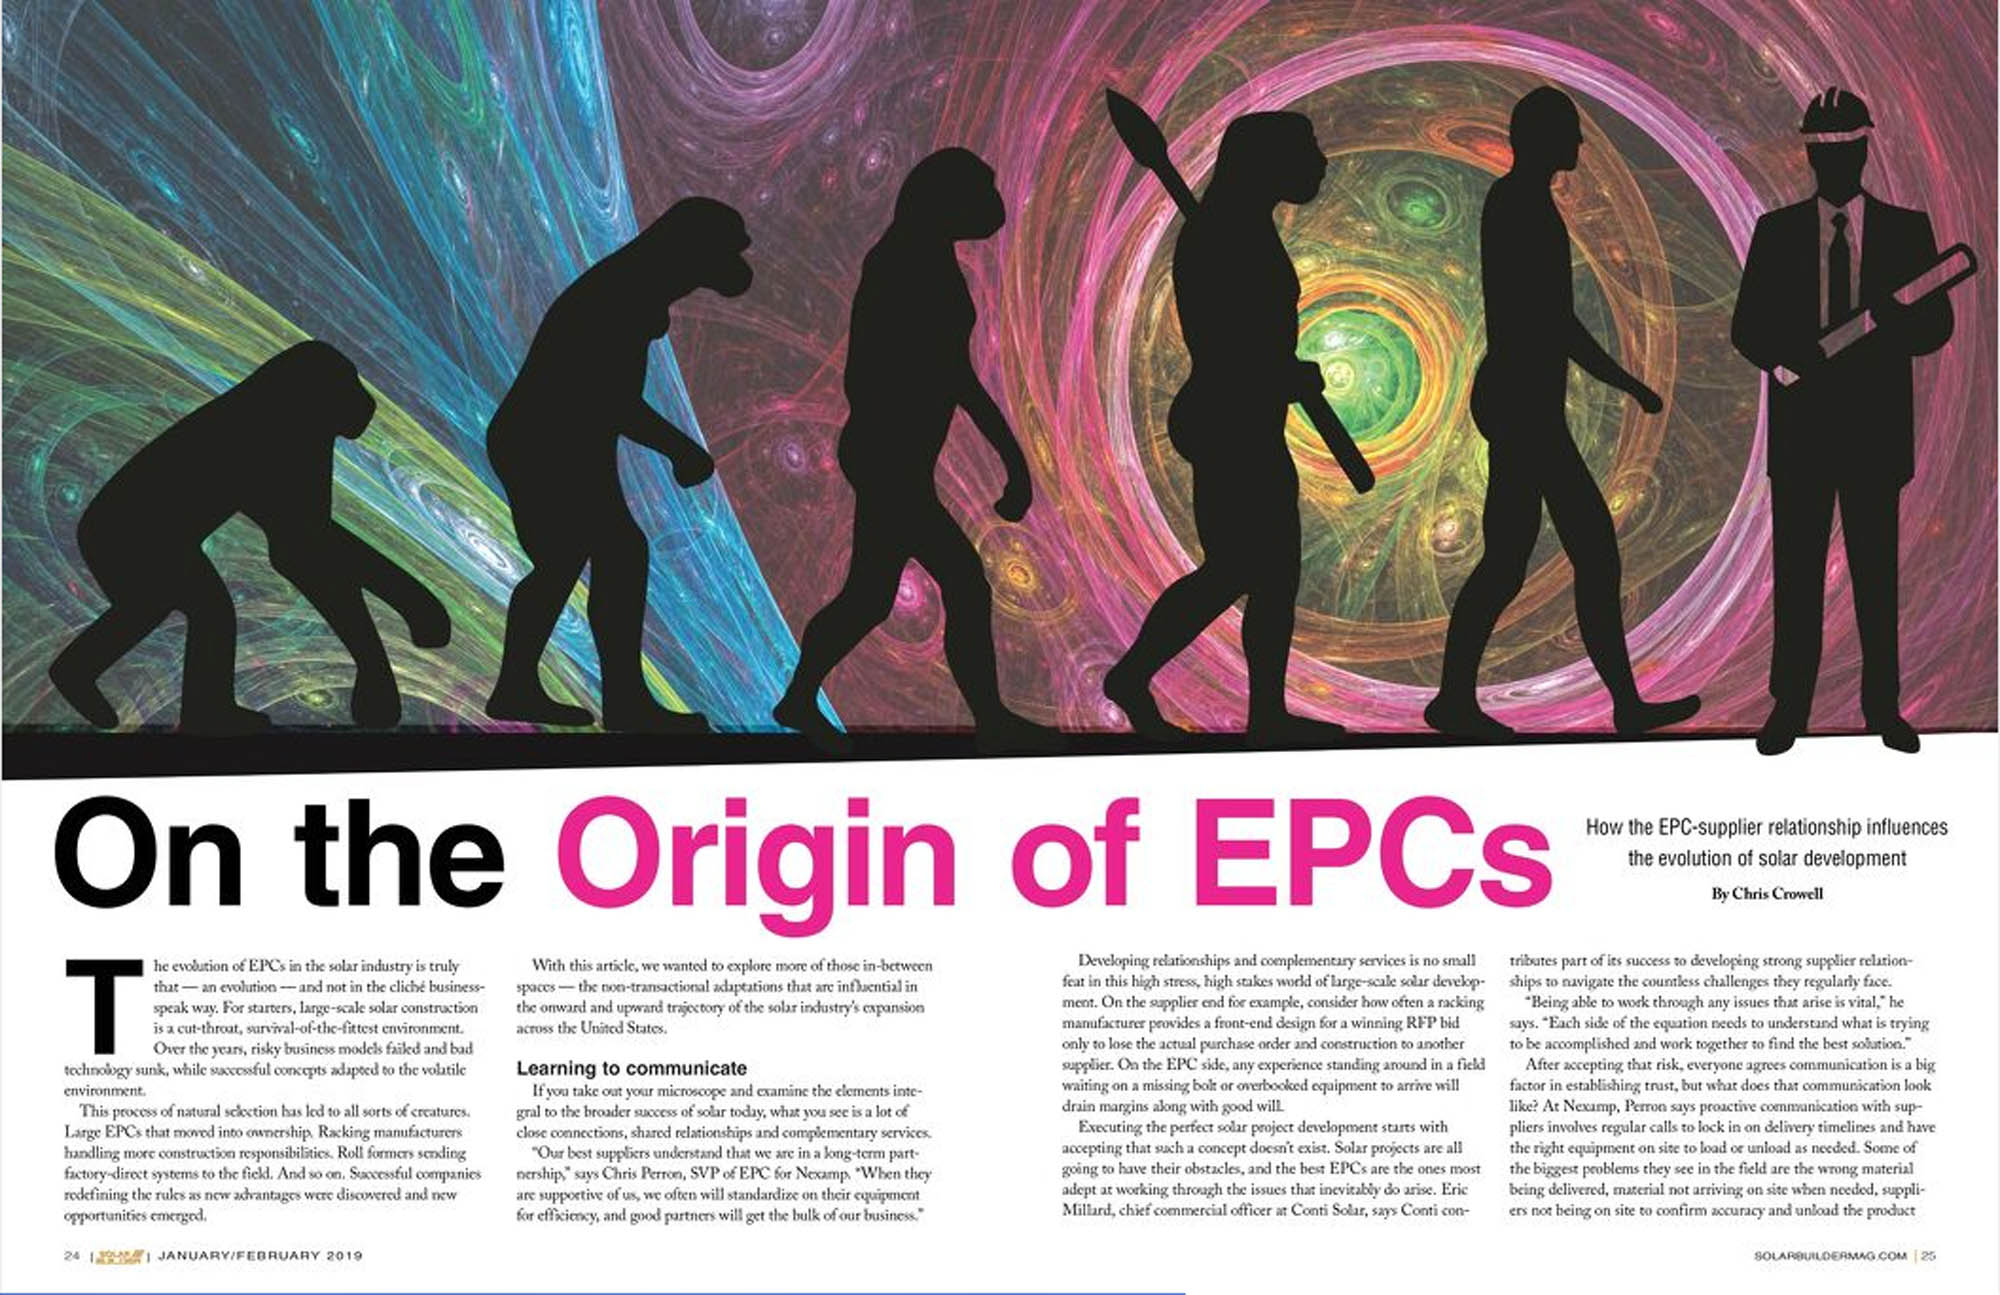 The Origin of EPCs